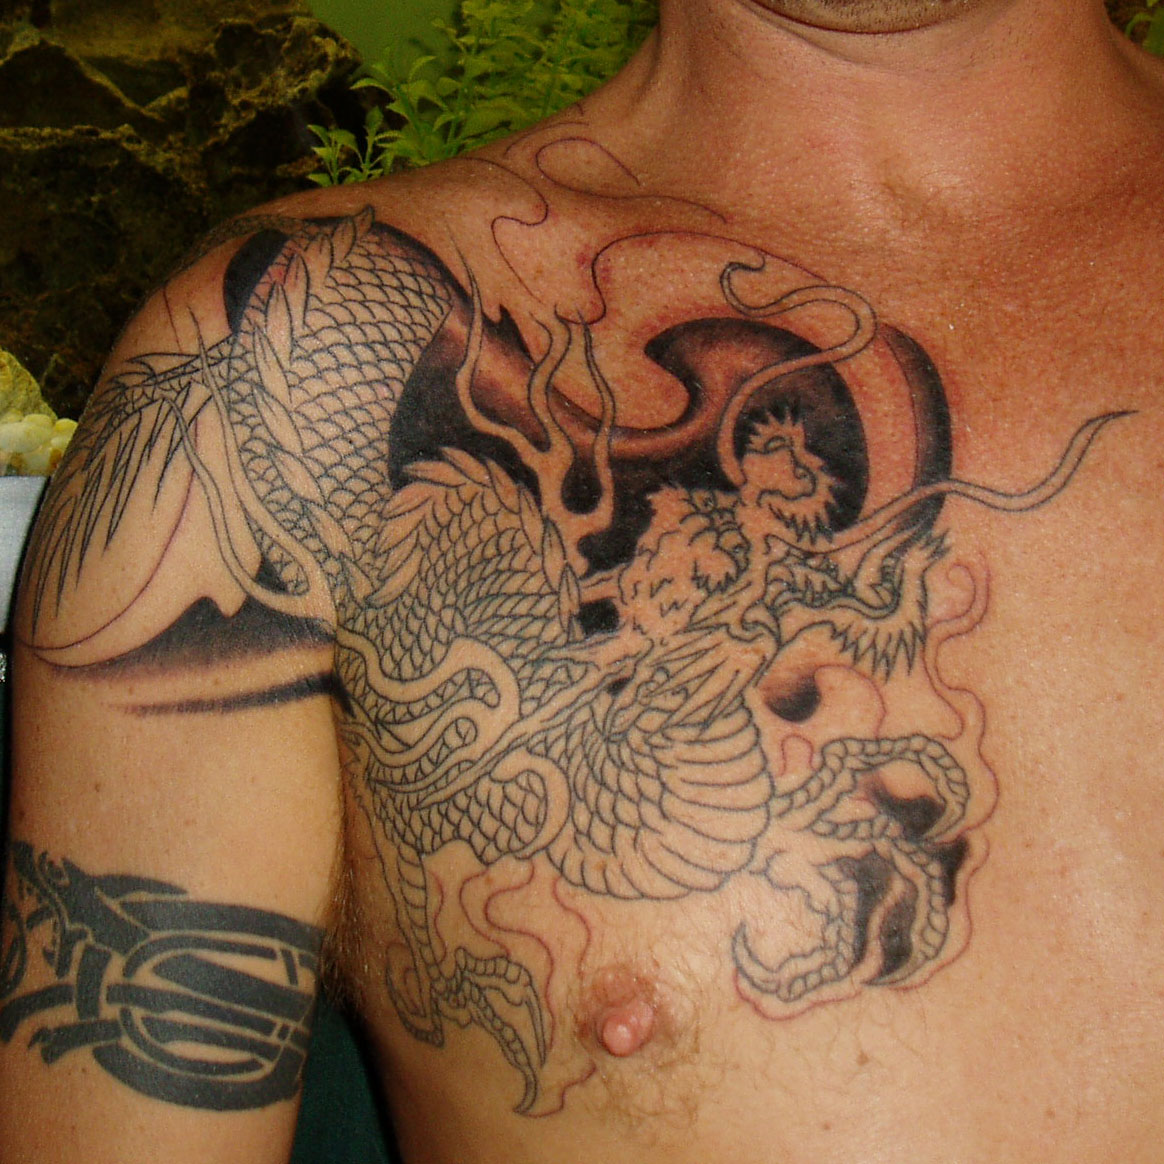 Hot Tattoos- Hottest Tattoo Designs